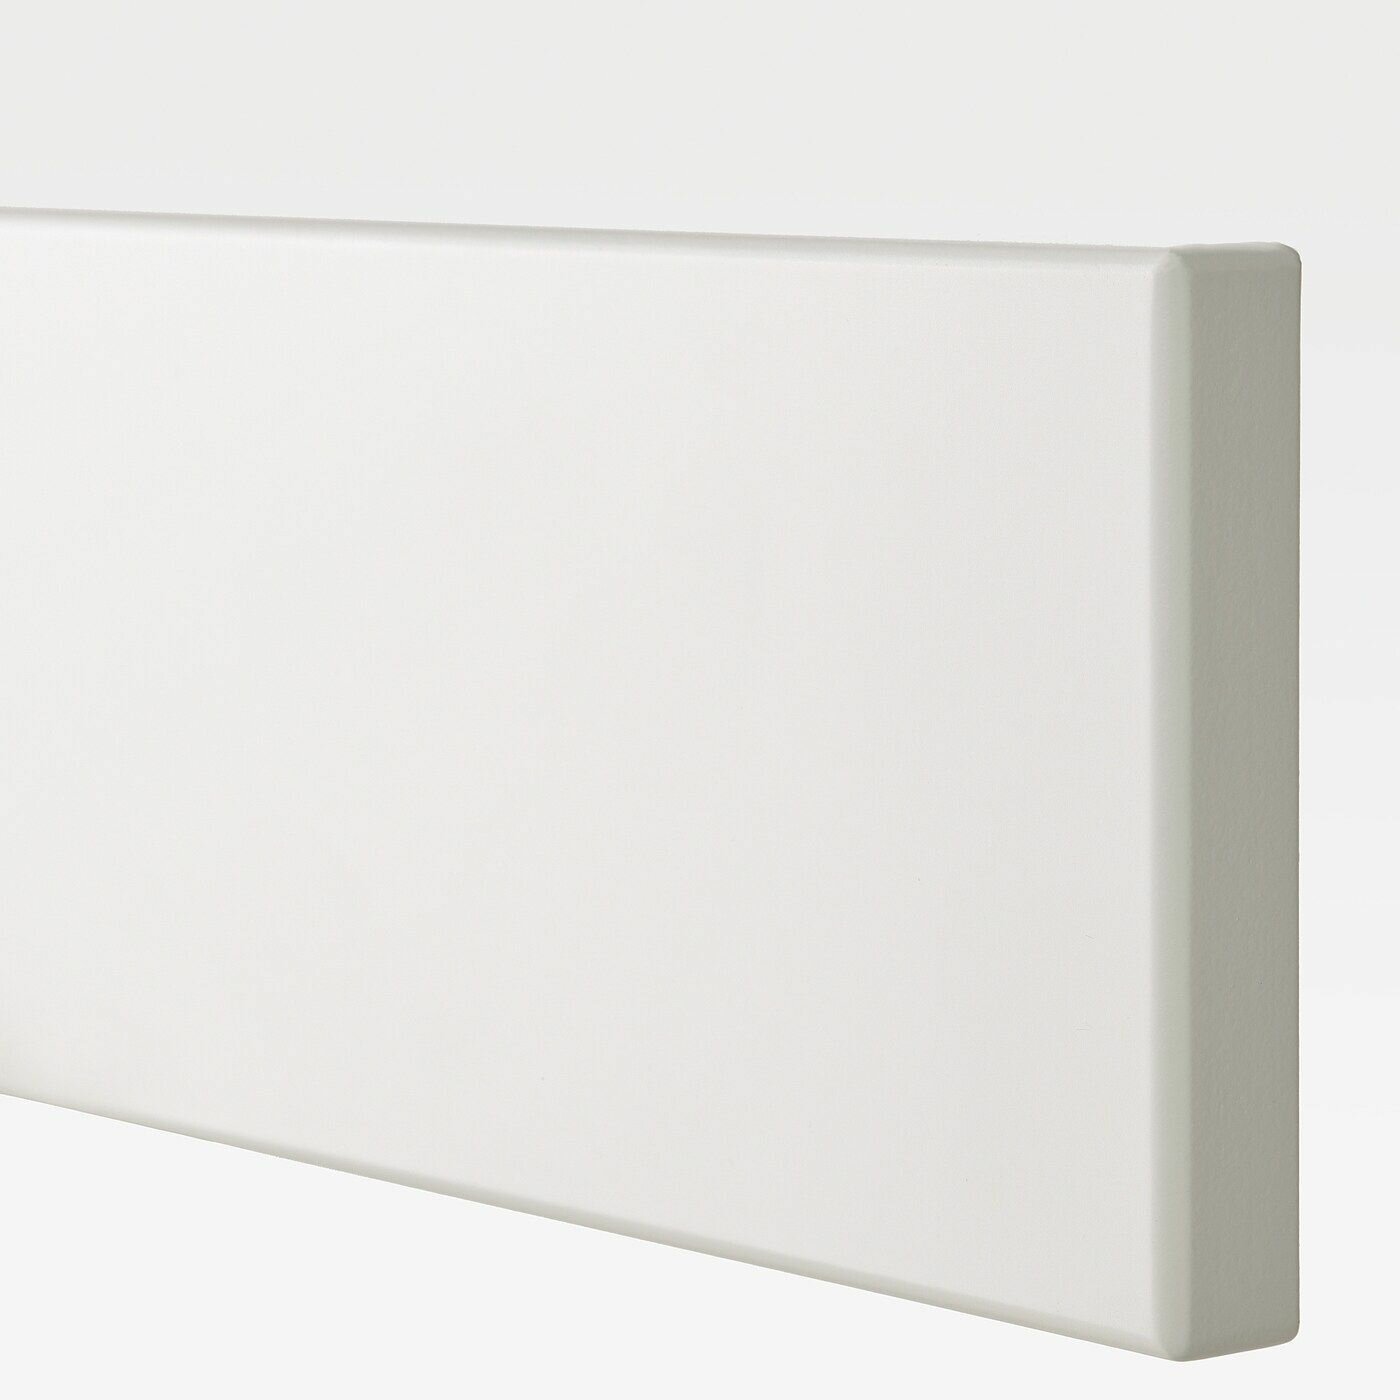 Фронтальная панель ящика IKEA STENSUND стенсунд, 40x10 см, 2шт, белый